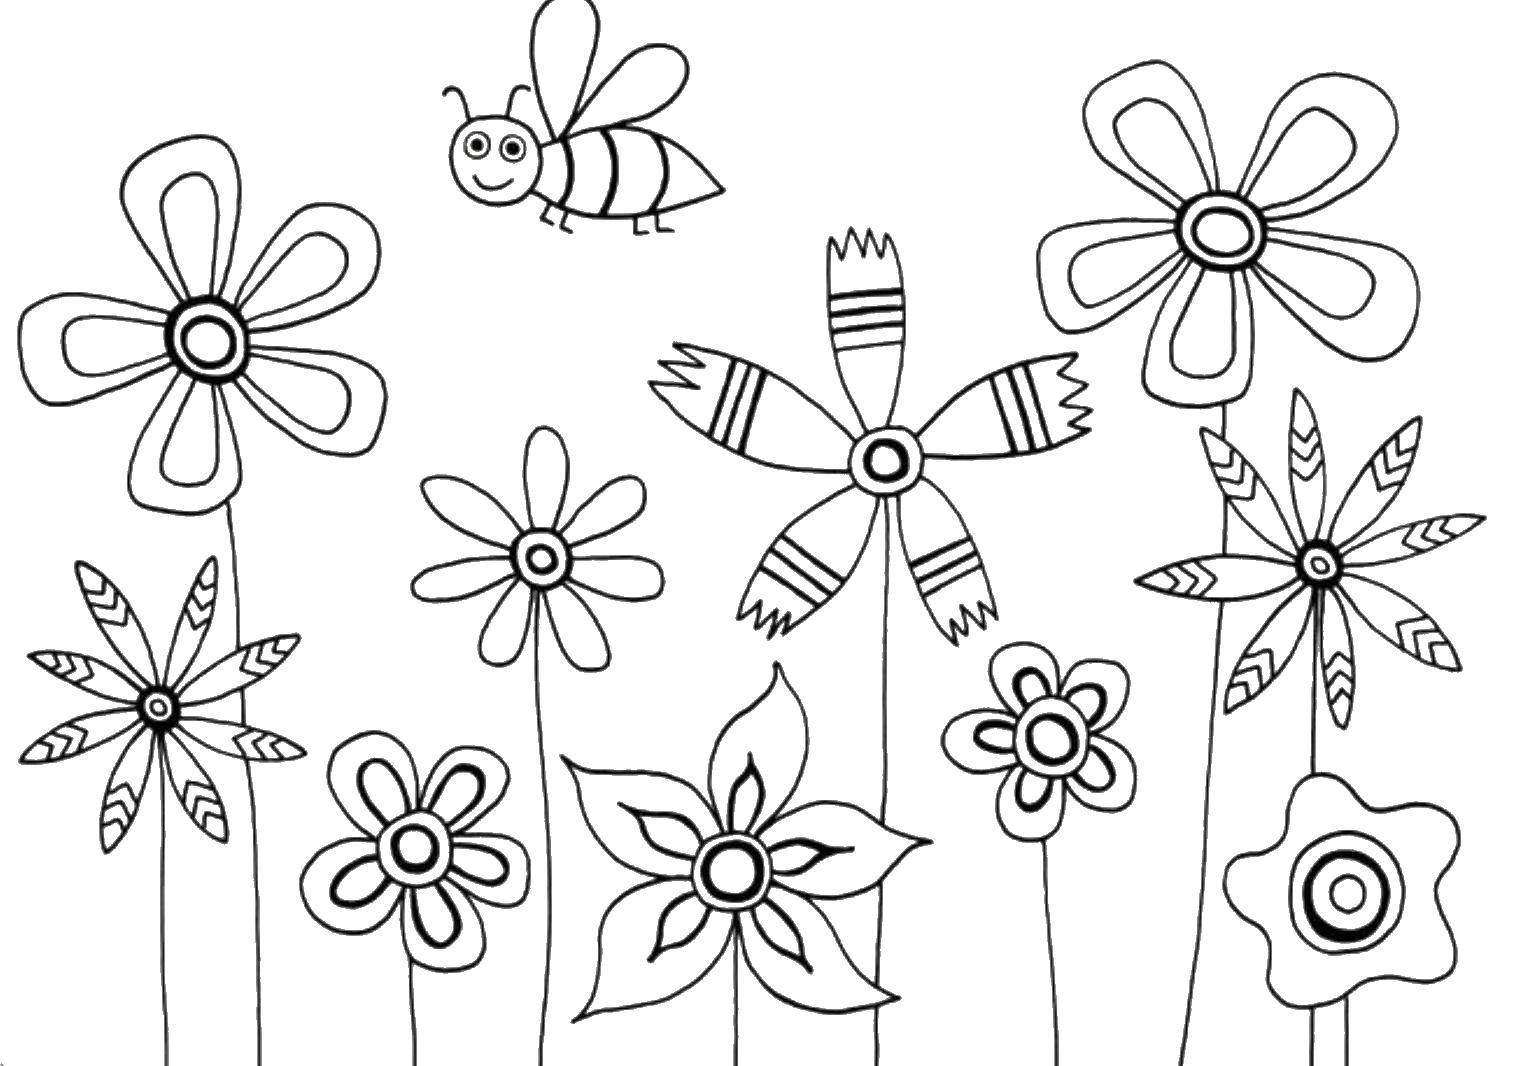 Раскраски с Цветами, Бабочками и Цветочками для детей (цветы, цветочки, образы)